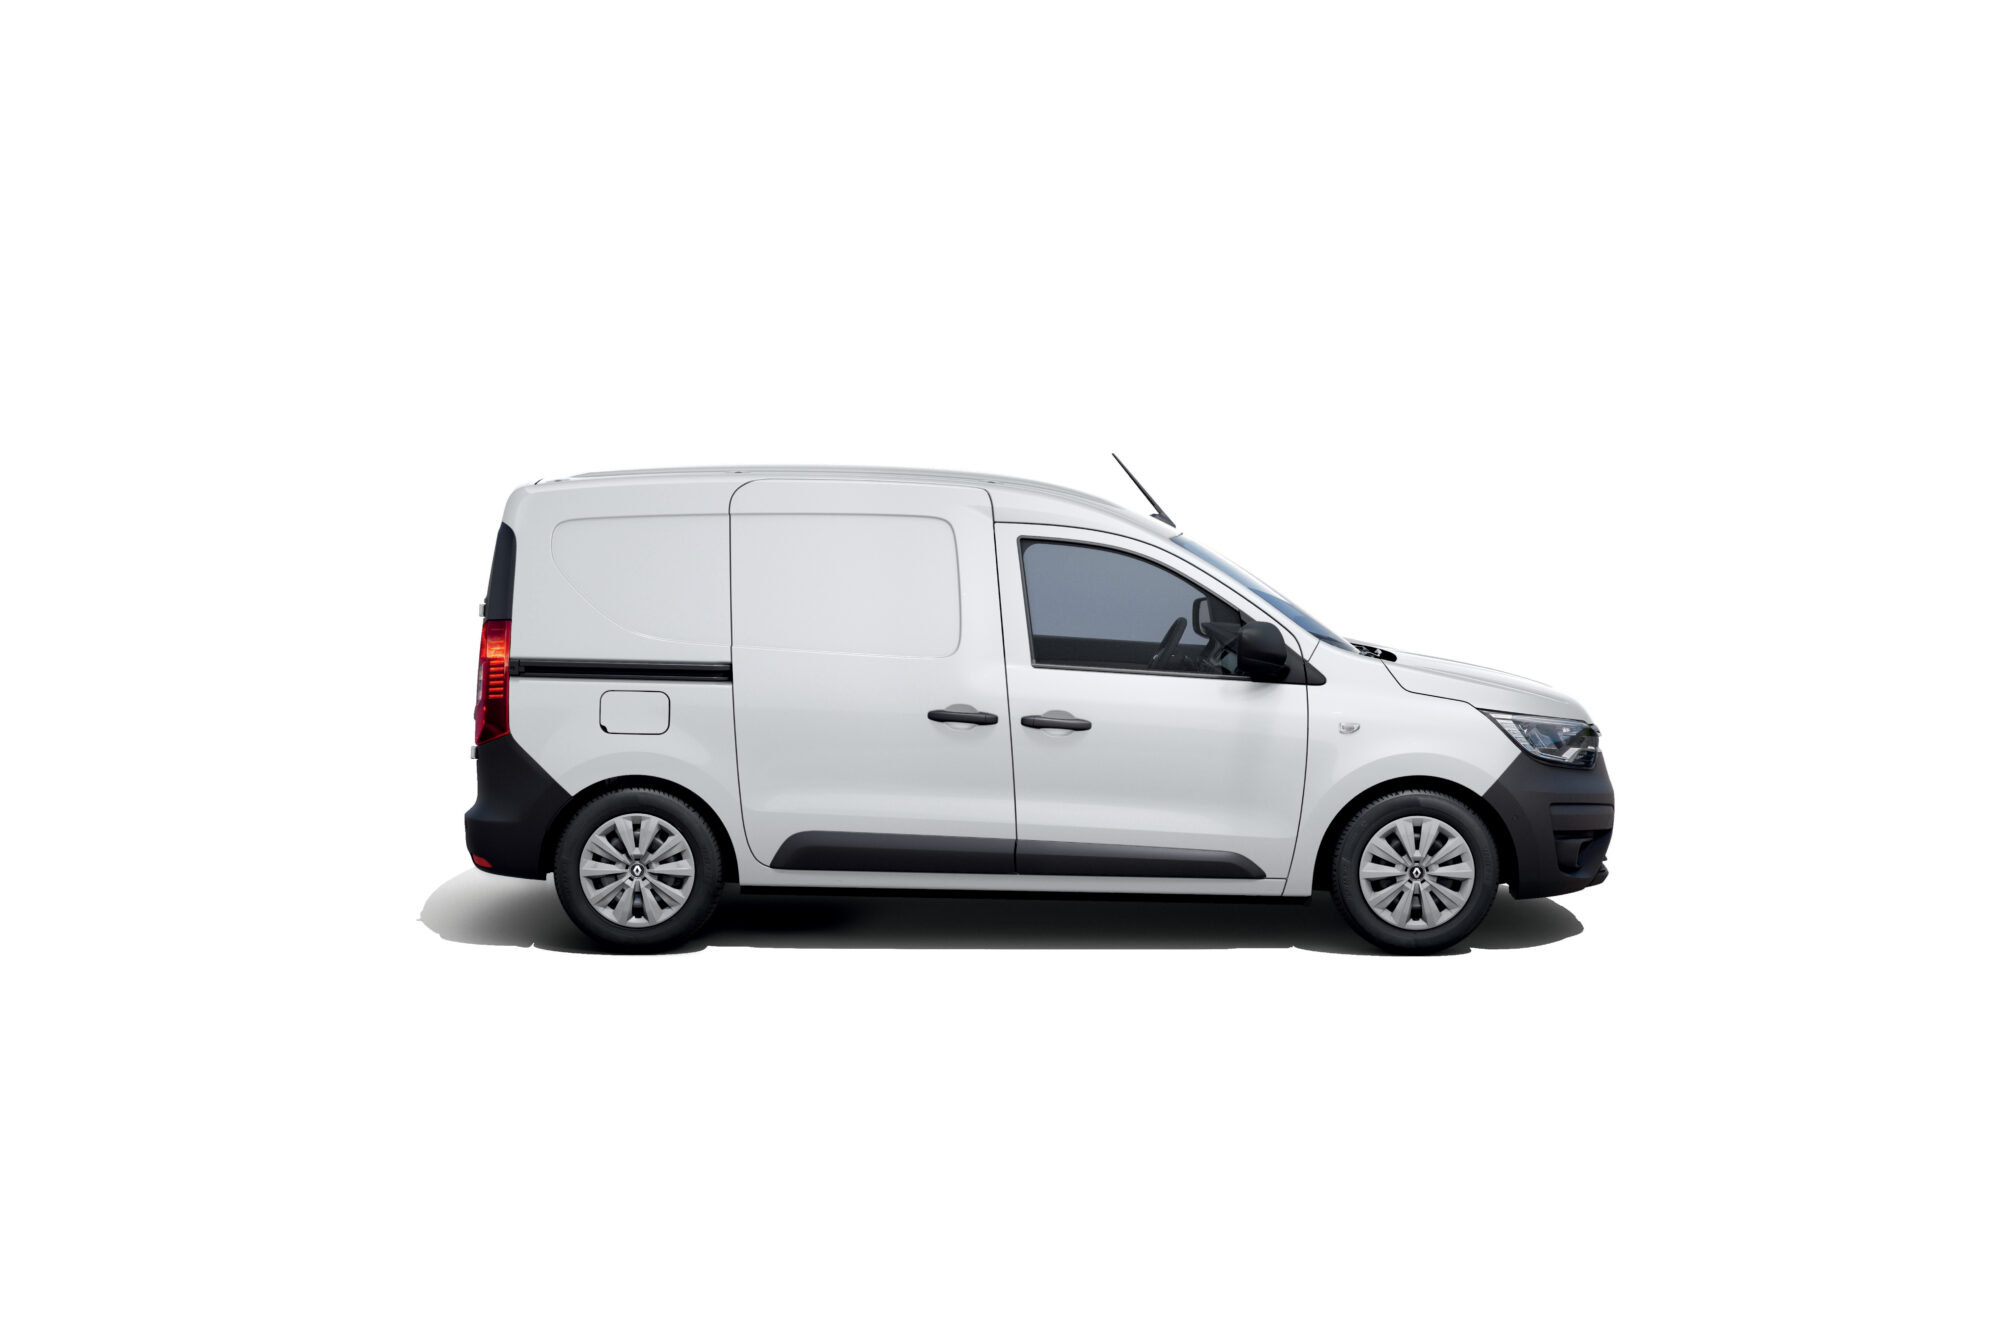 2021 - New Renault Express Van - Studio shoots